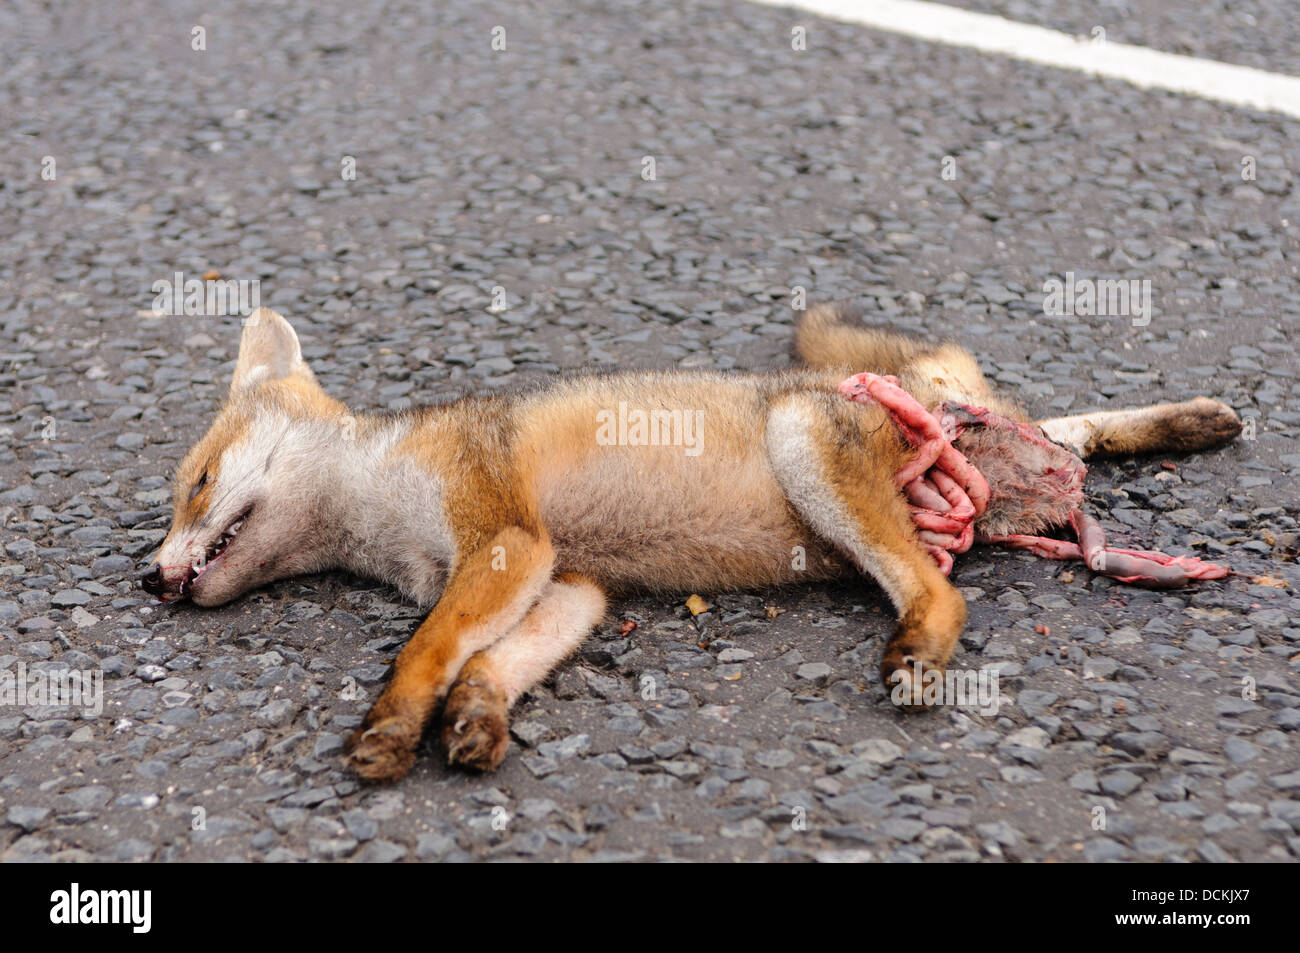 Dead fox roadkill sur une route rurale avec ses intestins courage exposés Banque D'Images